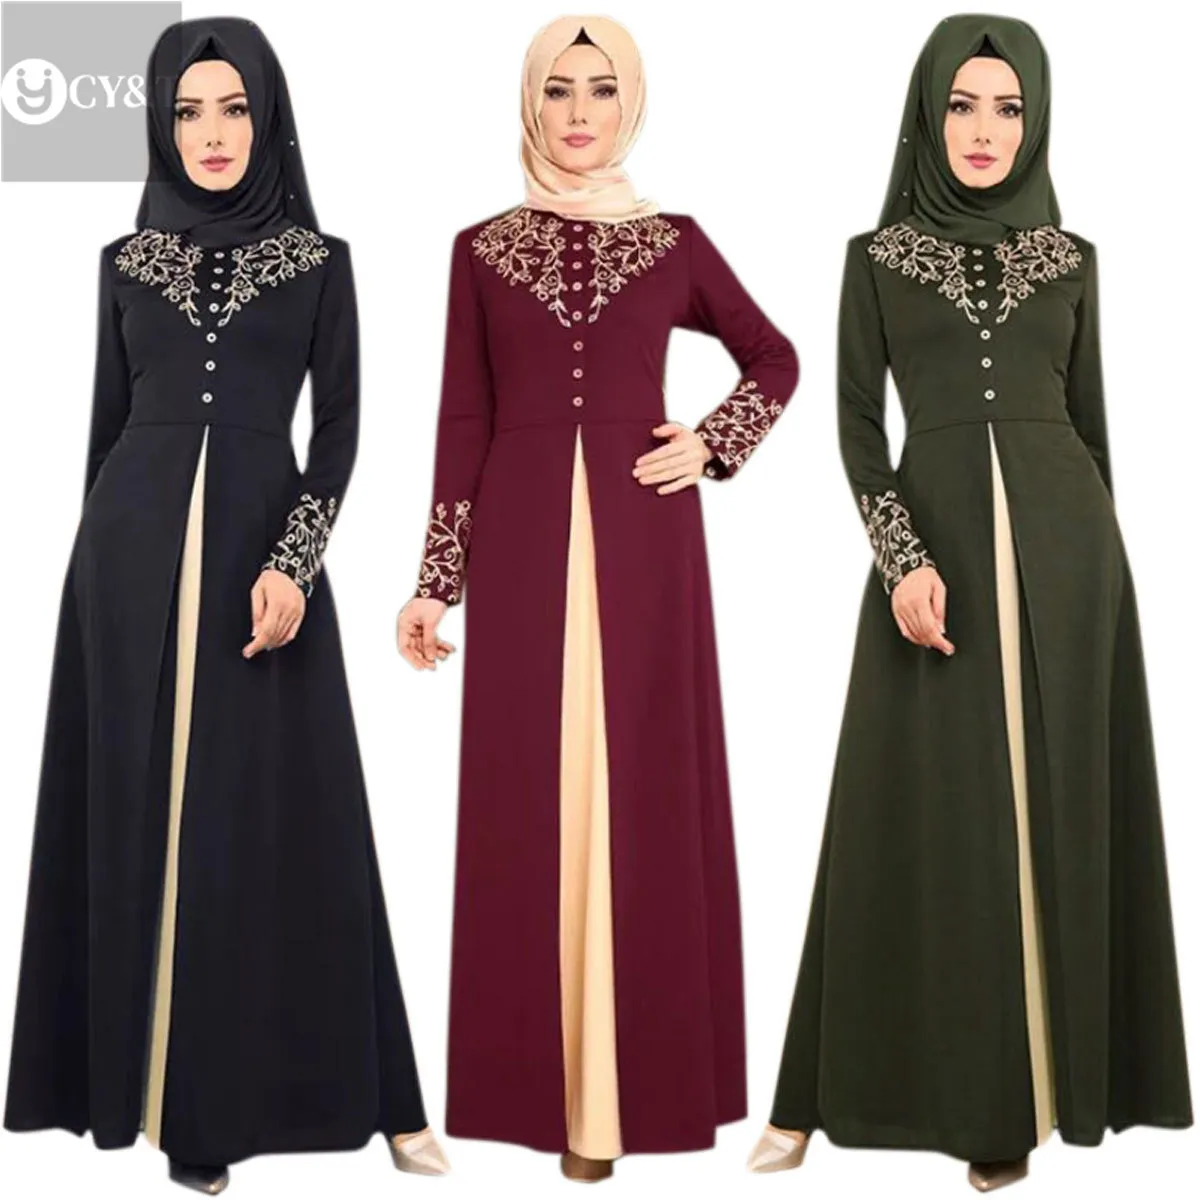 Quality Wholesale Dubai Plus Size Long Hem Chiffon Floral Hot Stamping Process Abaya Women Islamic Muslim Dress Black